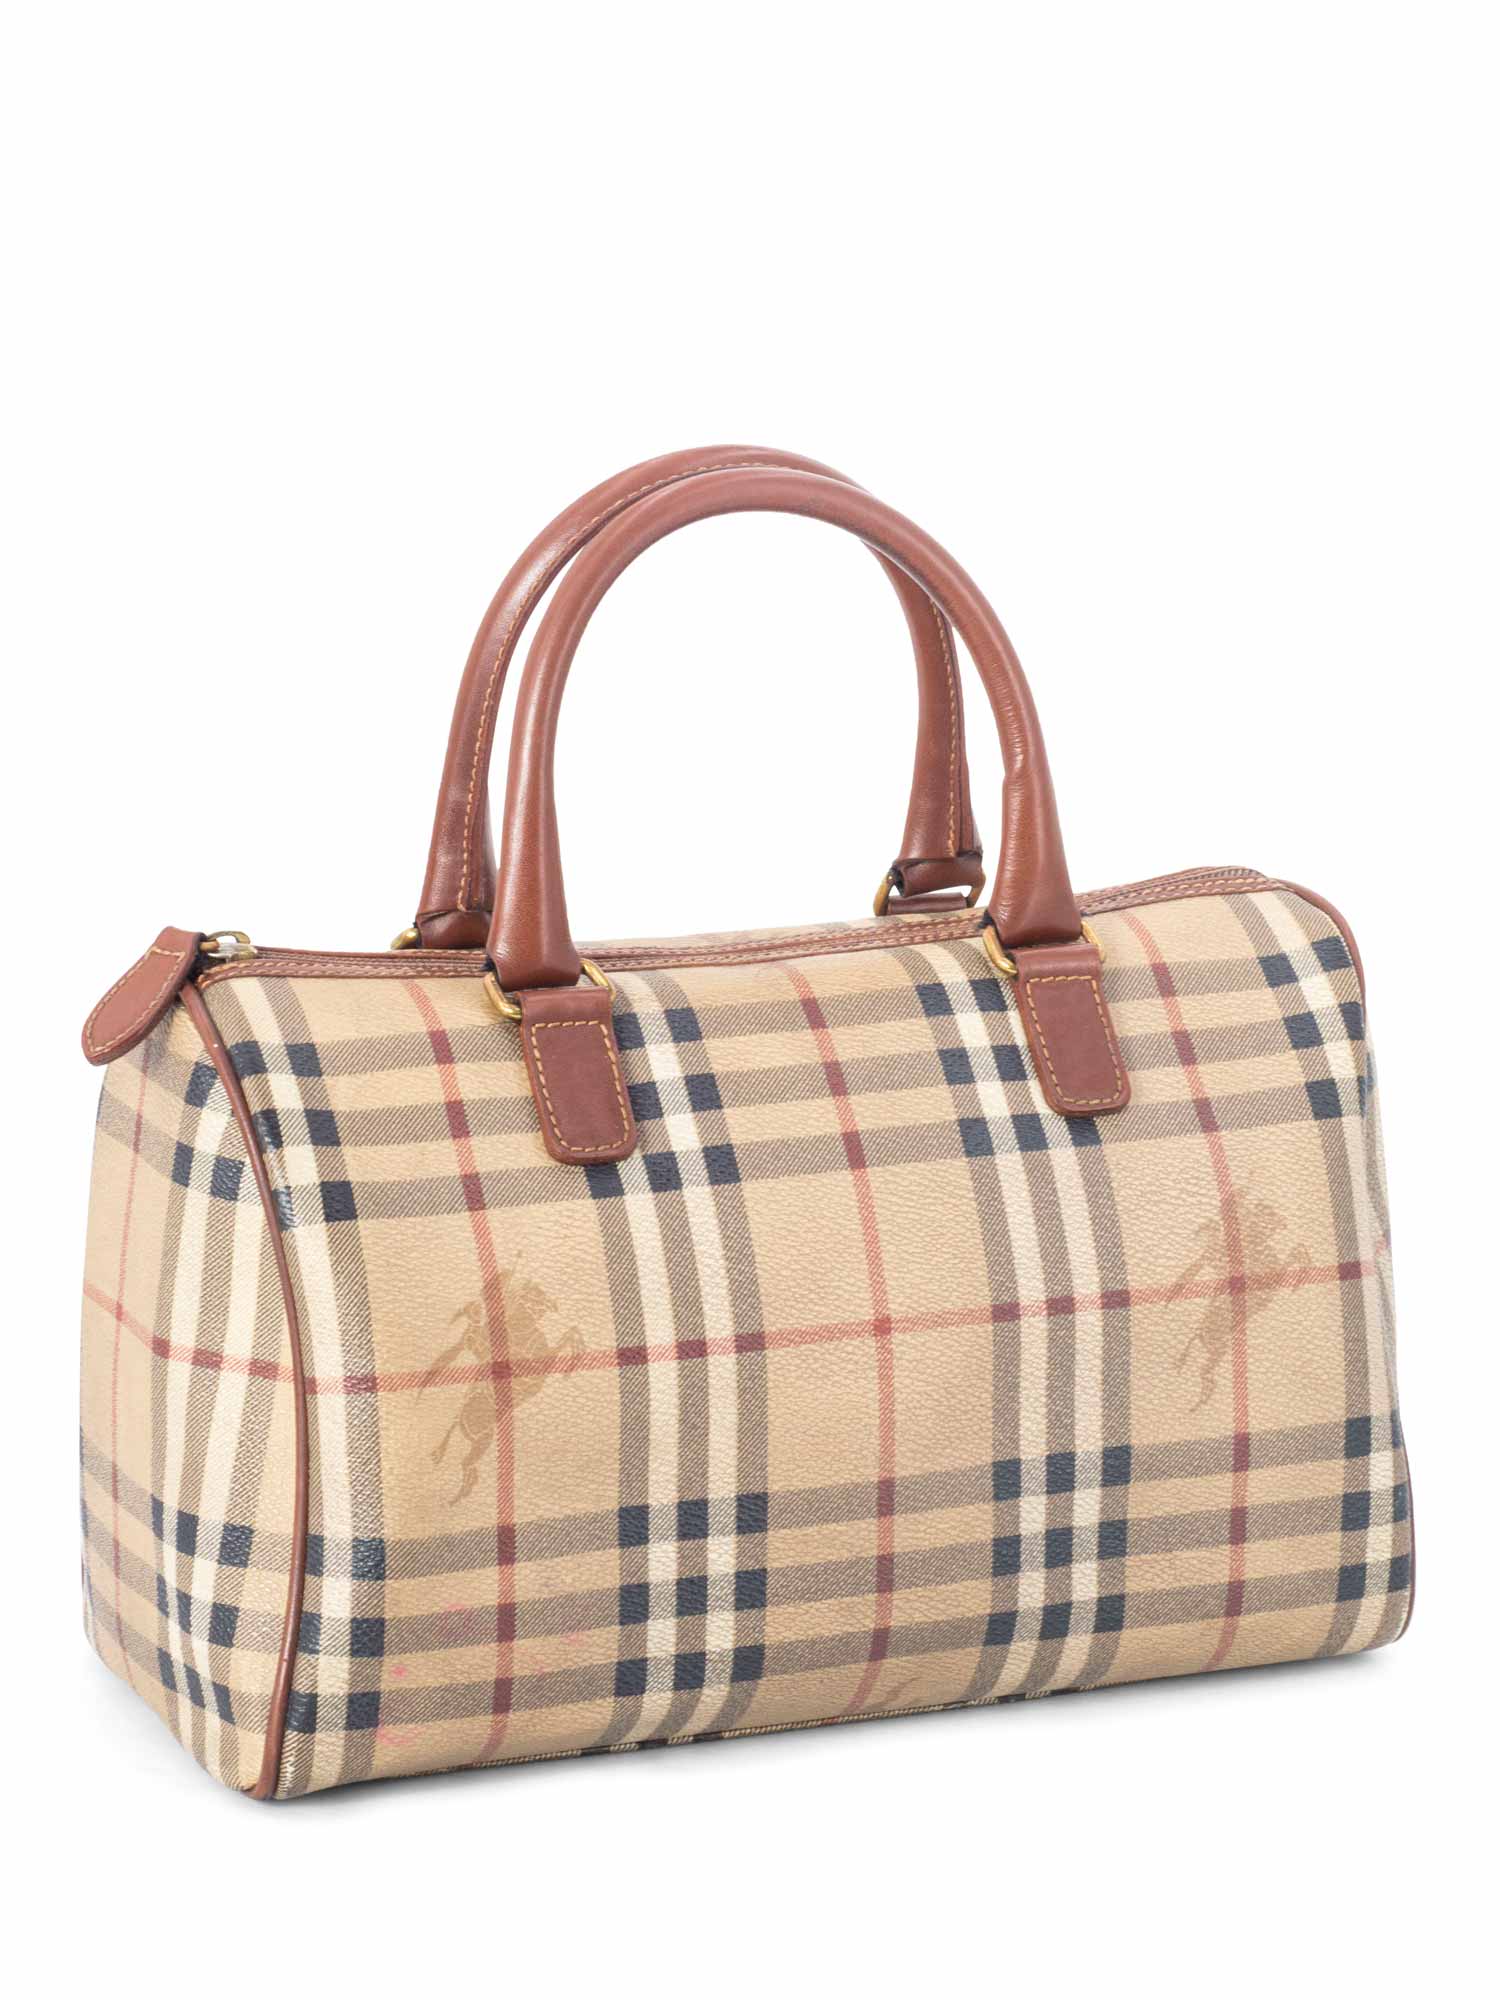 Burberry Nova Check Speedy Bag 30 Brown-designer resale